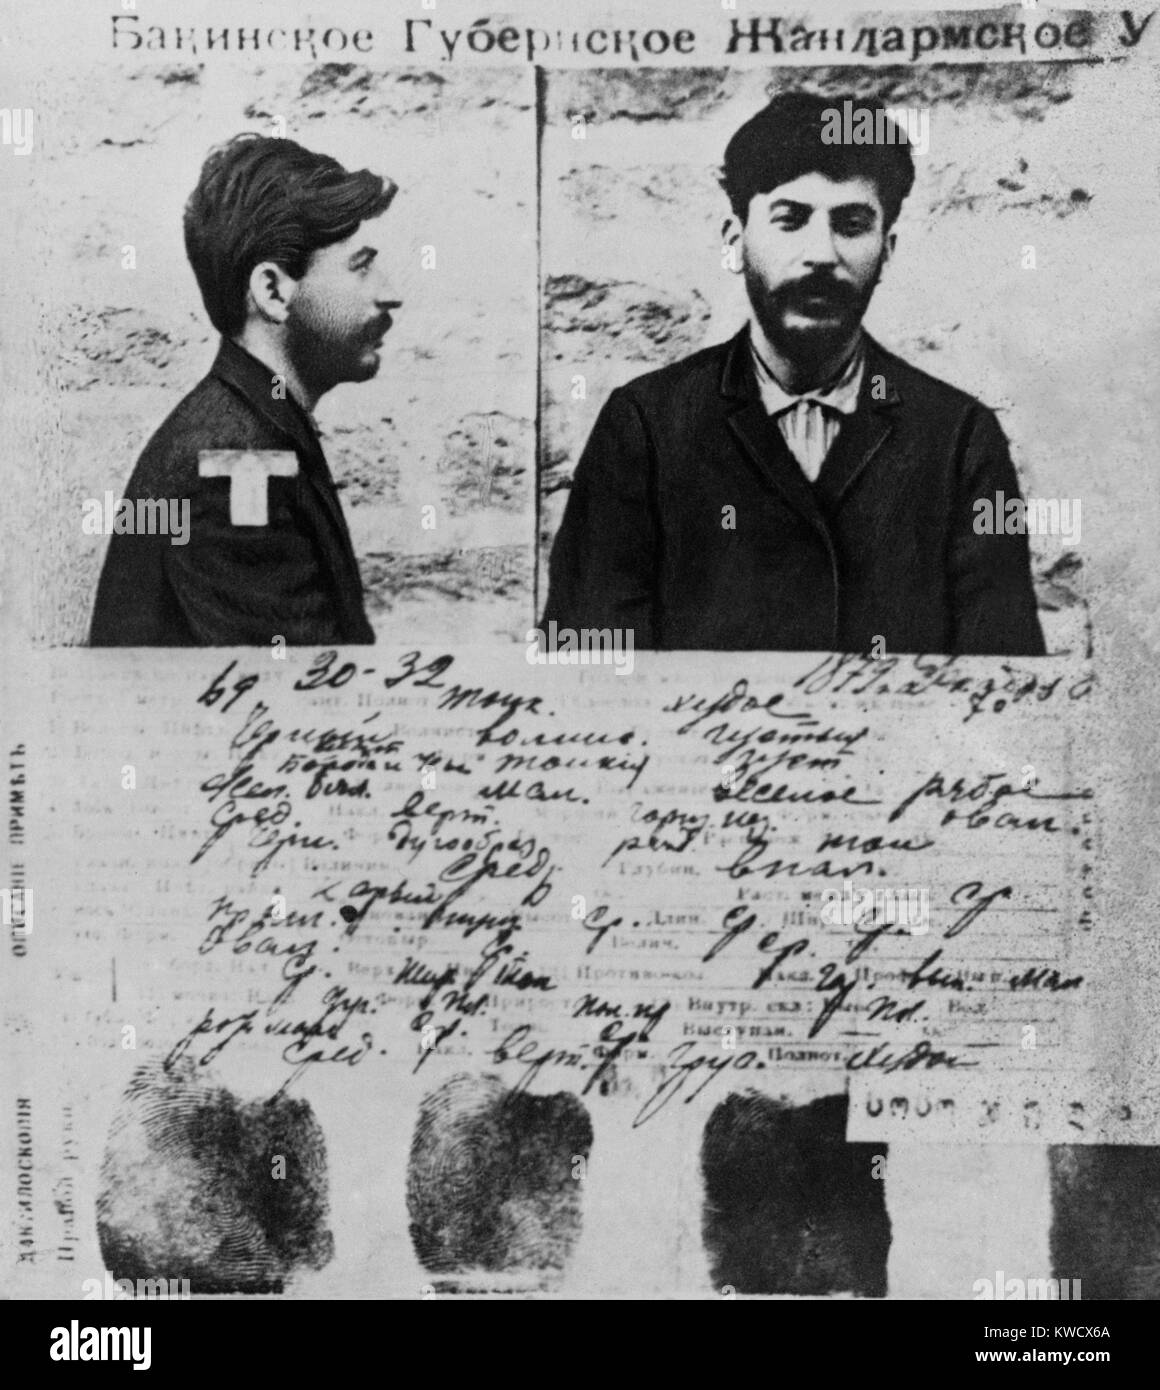 L'enregistrement de la police de Joseph Staline à partir des fichiers de la police secrète tsariste à Saint-Pétersbourg, en 1908. Djougachvili était son nom de famille, mais il a commencé à utiliser l'alias Staline autour de 1910 (BSLOC 2017 2 27) Banque D'Images